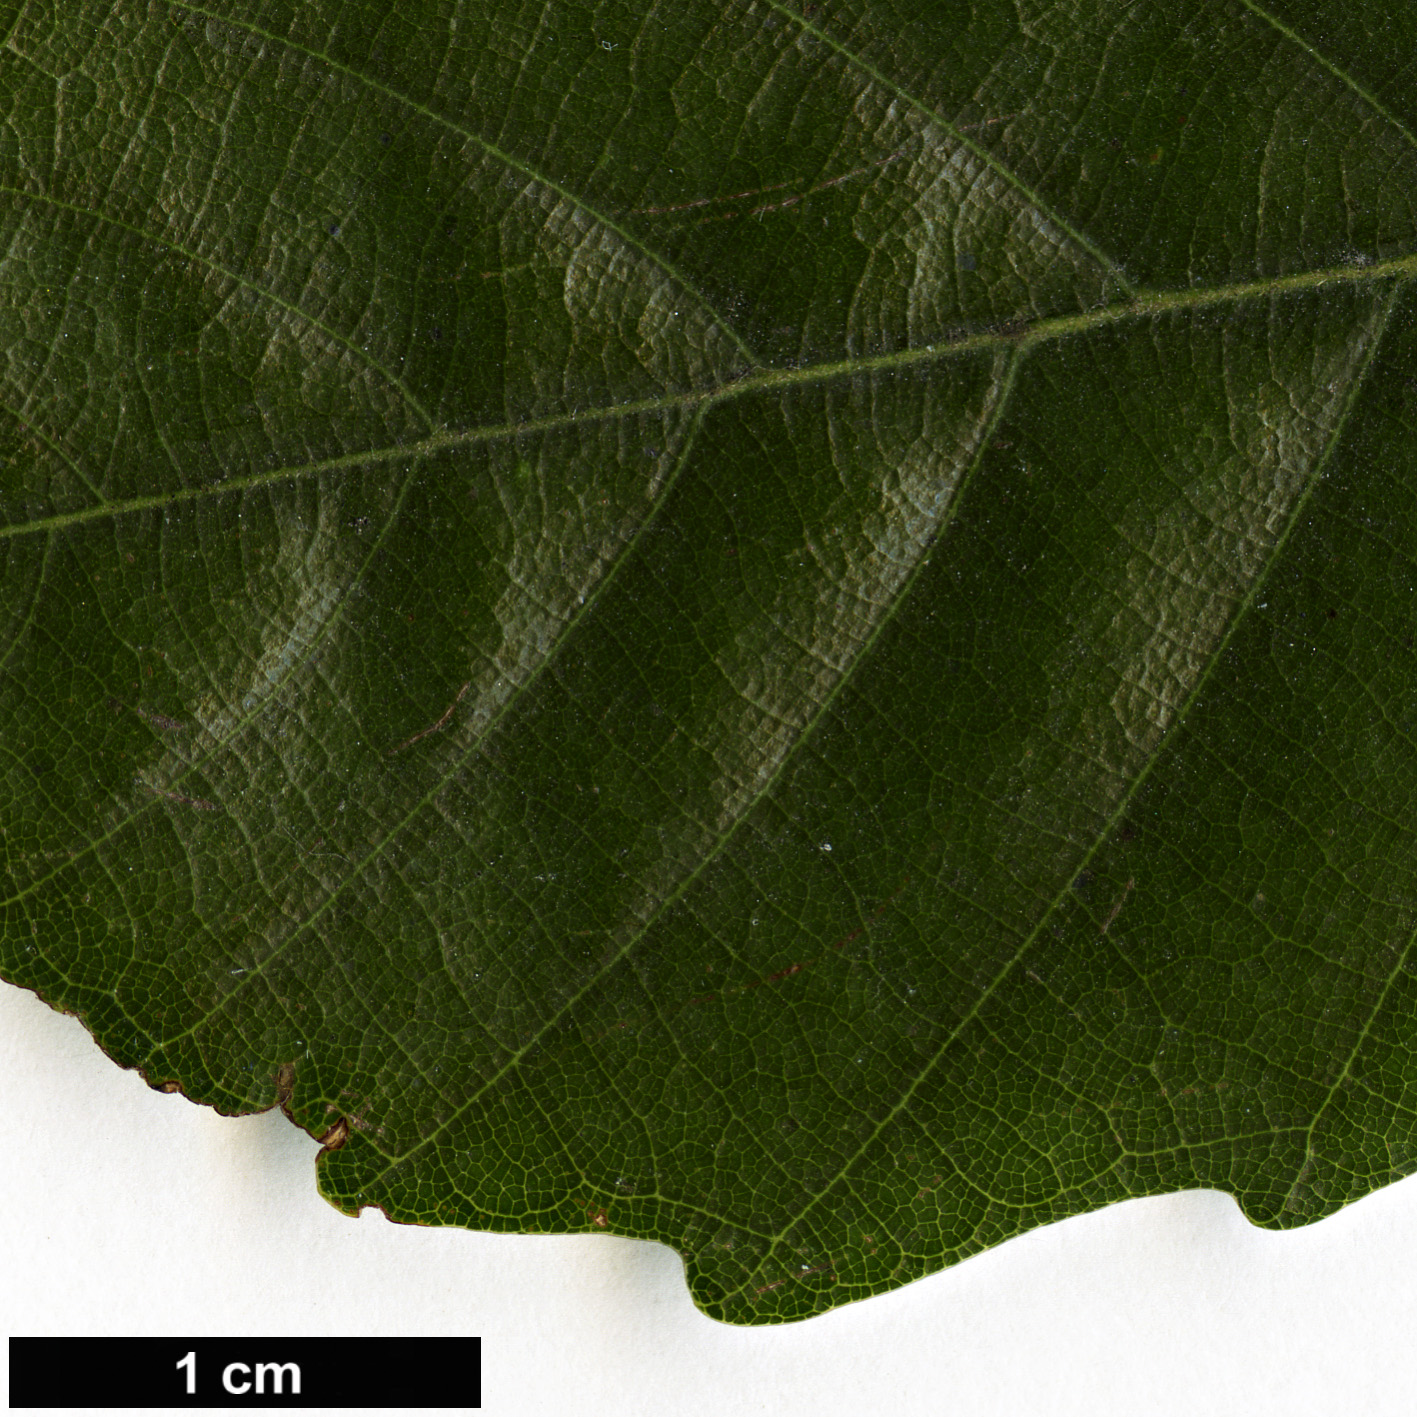 High resolution image: Family: Fagaceae - Genus: Lithocarpus - Taxon: konishii